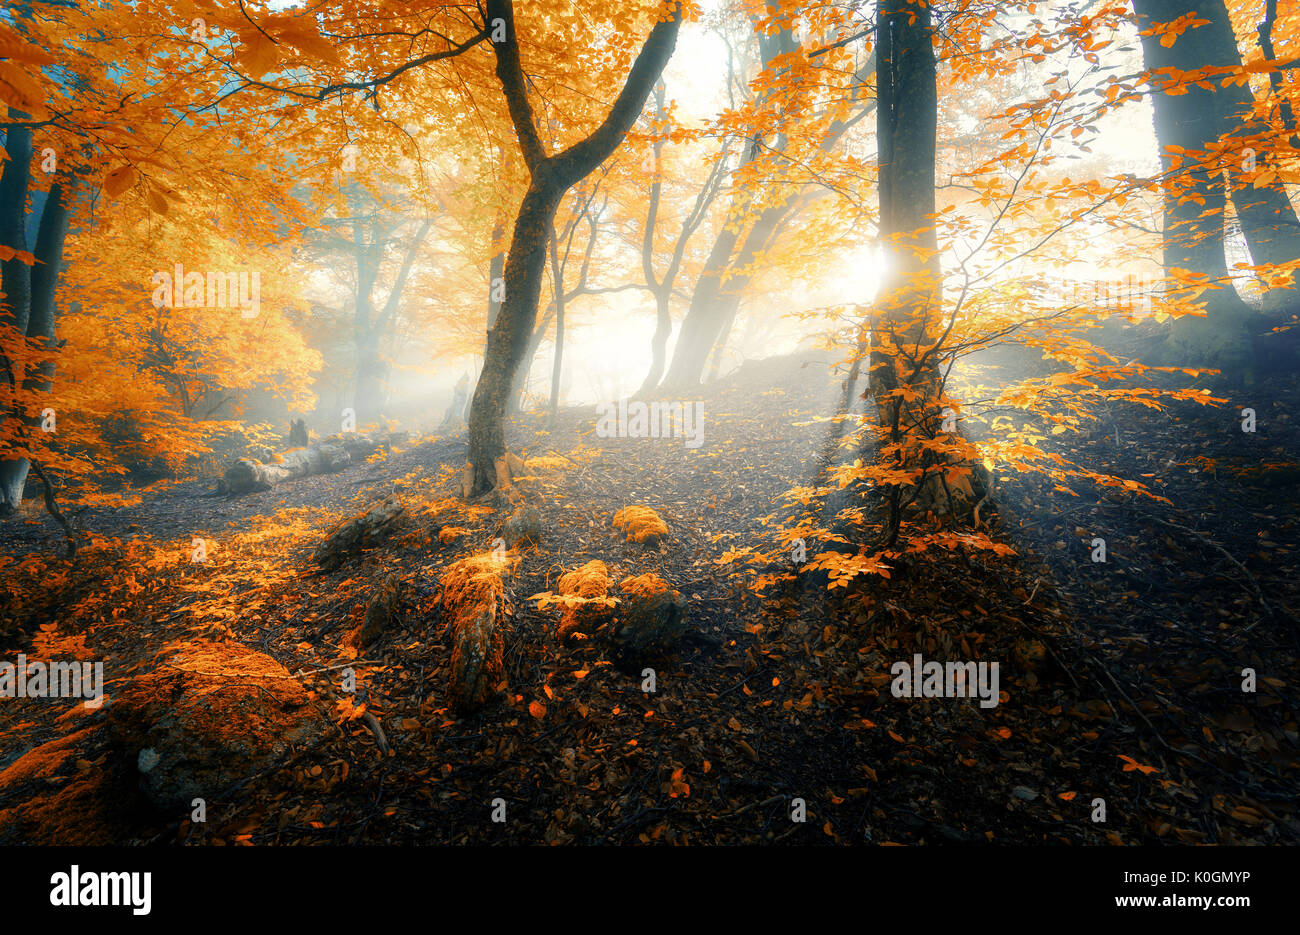 Viejo bosque mágico con rayos de sol de la mañana. Impresionante bosque de niebla. Colorido paisaje con bosque neblinoso, sol de oro, naranja follaje al amanecer. Foto de stock